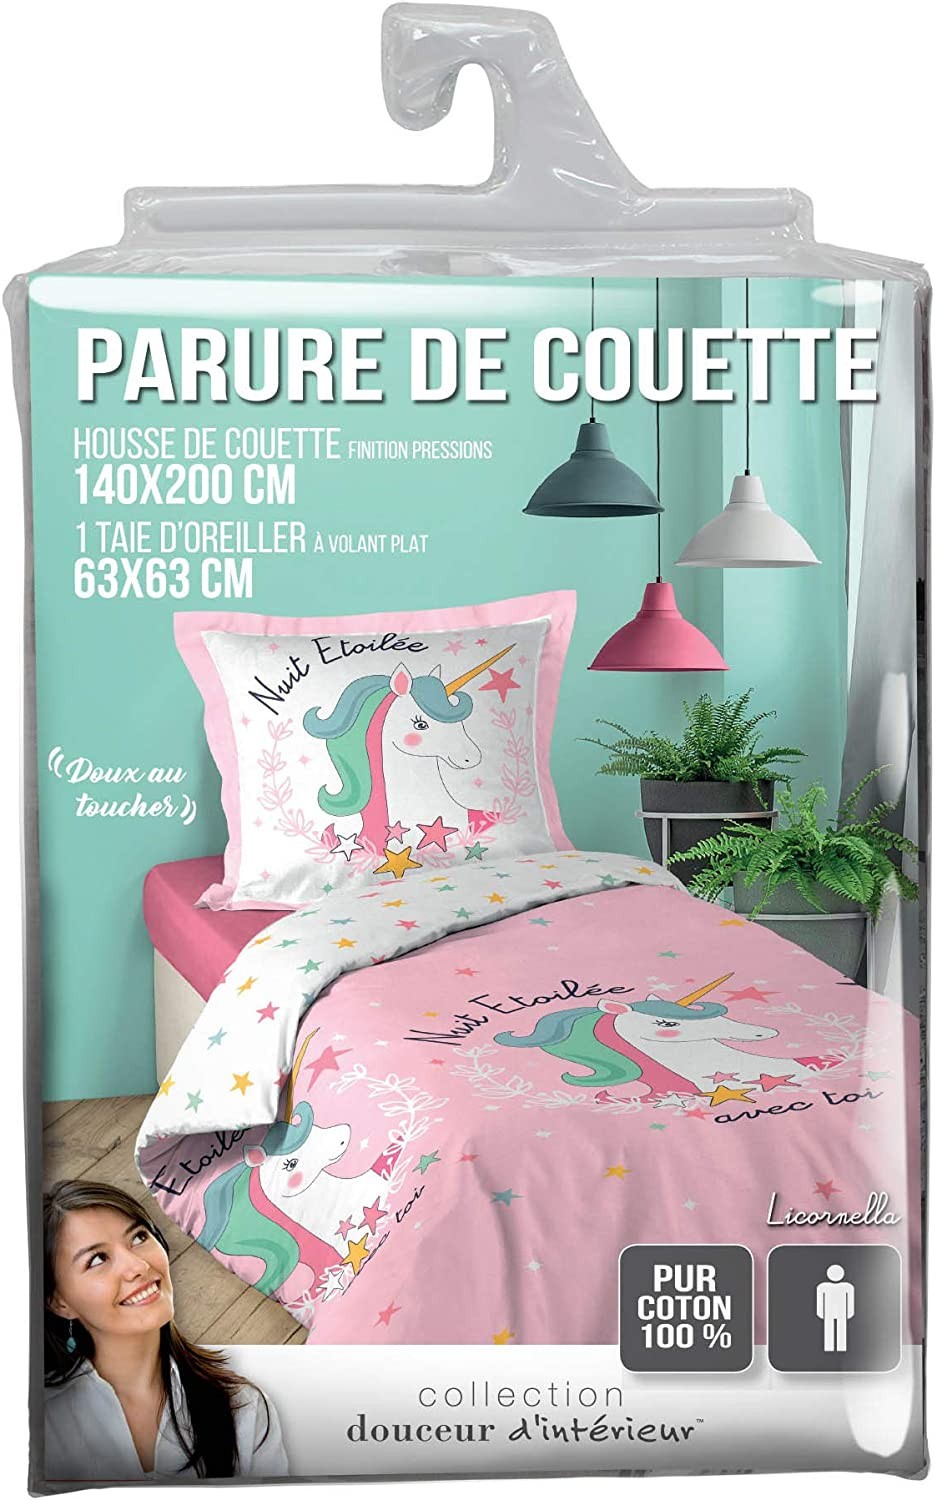 https://www.jlstore-leblanc.fr/8045/douceur-d-interieur-parure-housse-de-couette-140x200-cm-licornella.jpg